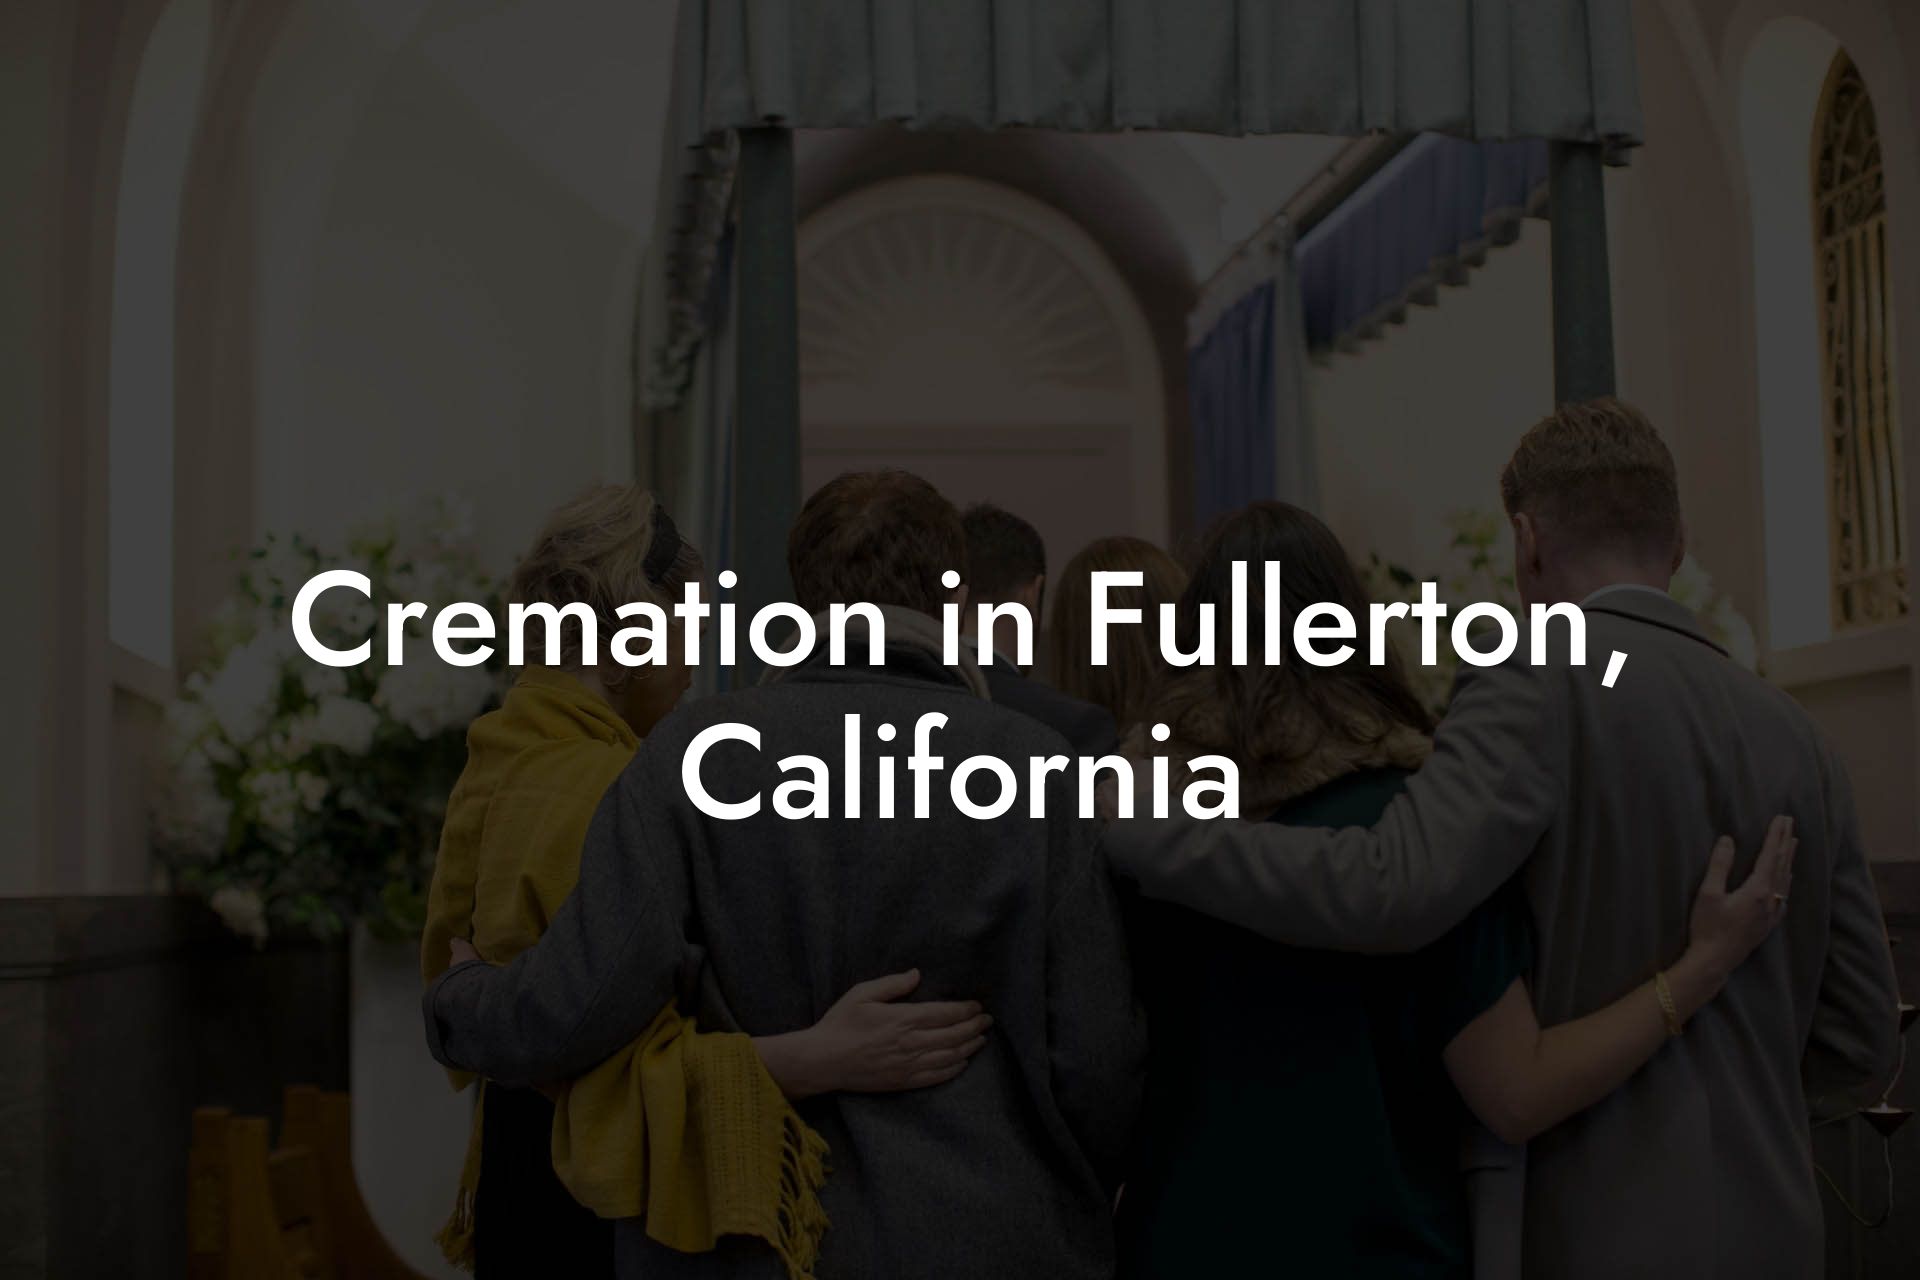 Cremation in Fullerton, California